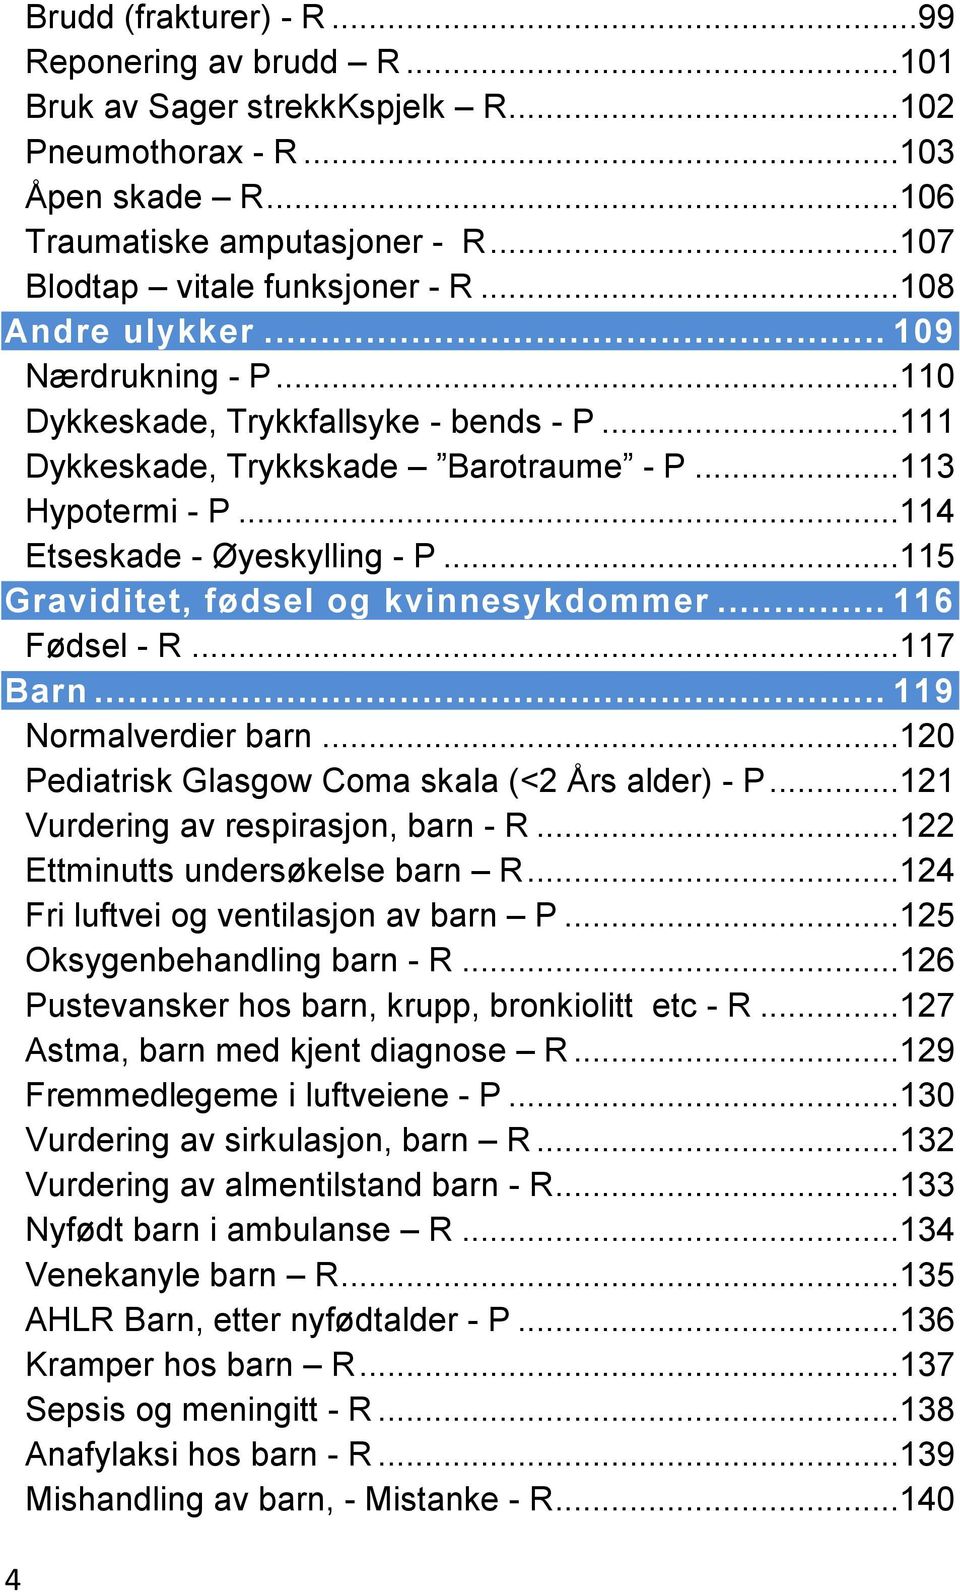 ..115 Graviditet, fødsel og kvinnesykdommer... 116 Fødsel - R...117 Barn... 119 Normalverdier barn...120 Pediatrisk Glasgow Coma skala (<2 Års alder) - P...121 Vurdering av respirasjon, barn - R.